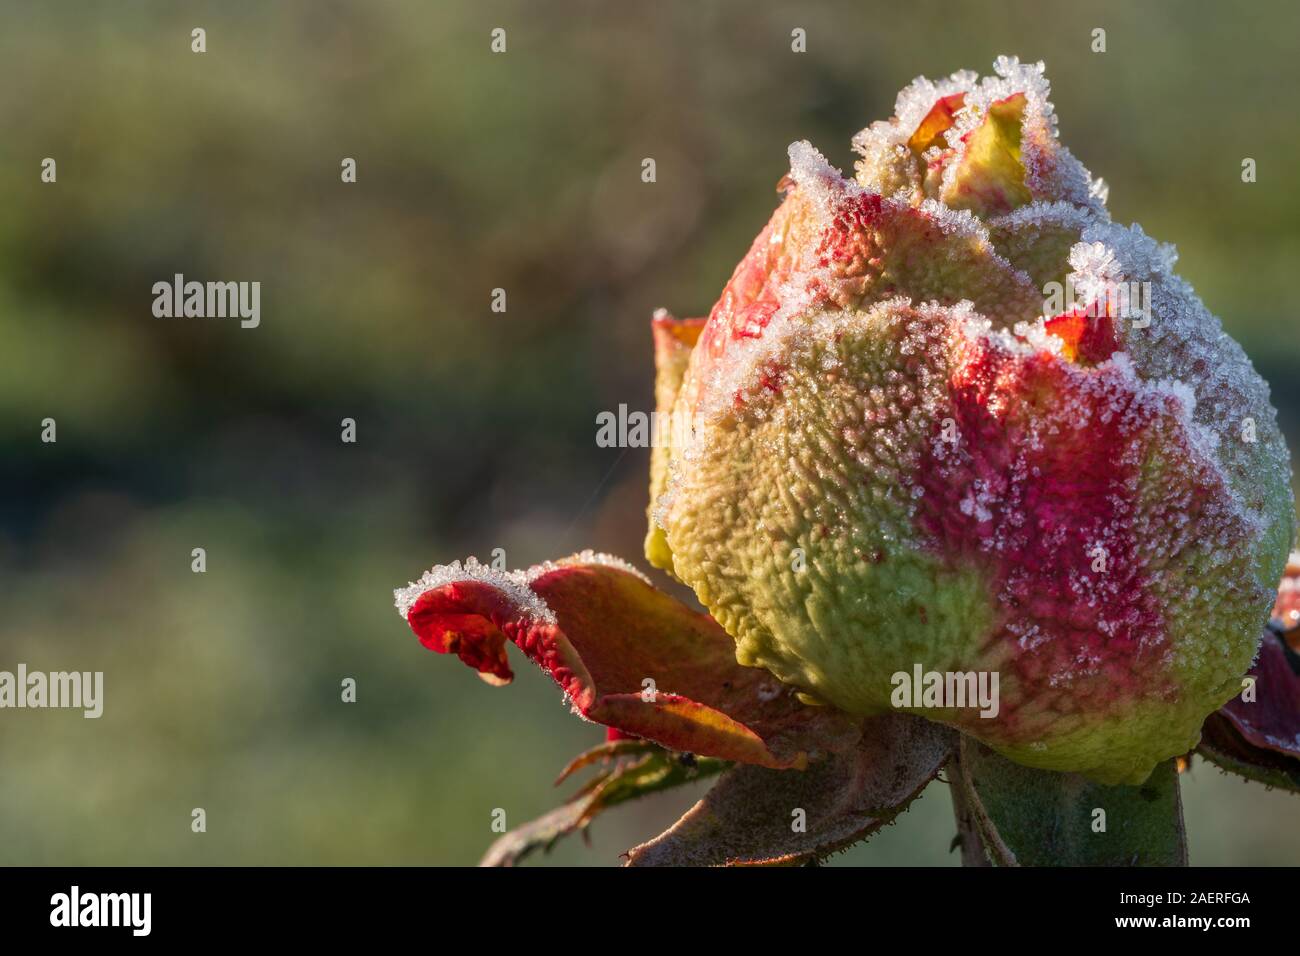 Frozen Rose mit roten und gelben Blüten, mit weißen Eiskristallen bedeckt. Das Konzept der romantischen Liebe, im Winter oder bei kalten Temperaturen. Closeup Makro Stockfoto